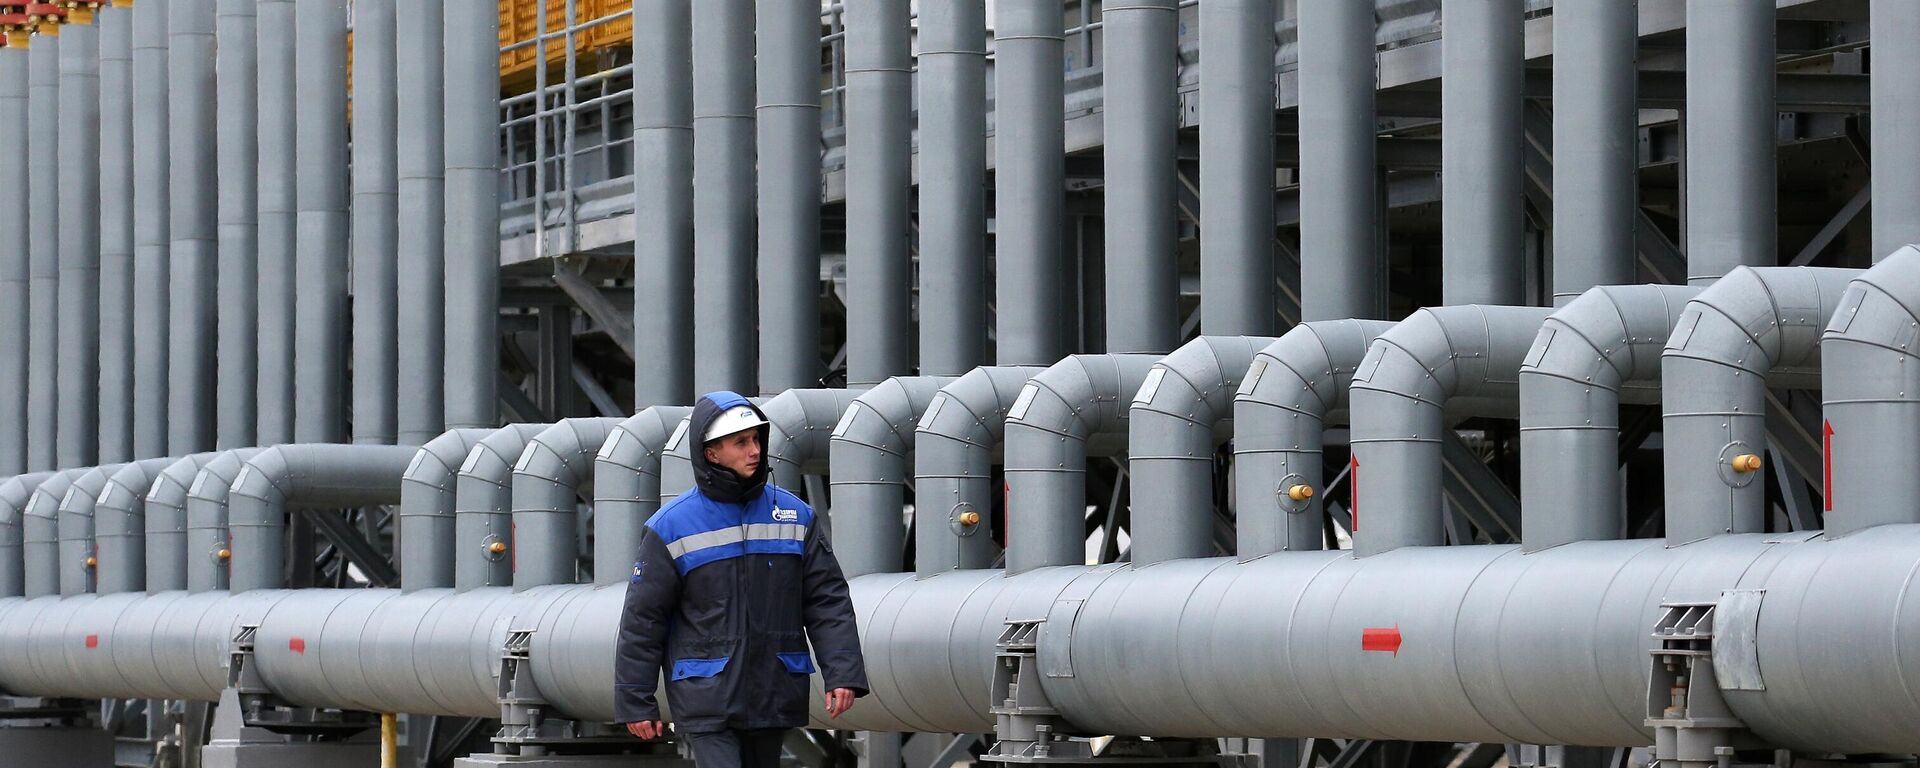 Trạm nén khí Russkaya, bộ phận của hệ thống đường ống dẫn khí nhằm đảm bảo nguồn cung cấp khí đốt cho Dòng chảy Thổ Nhĩ Kỳ. - Sputnik Việt Nam, 1920, 20.05.2022